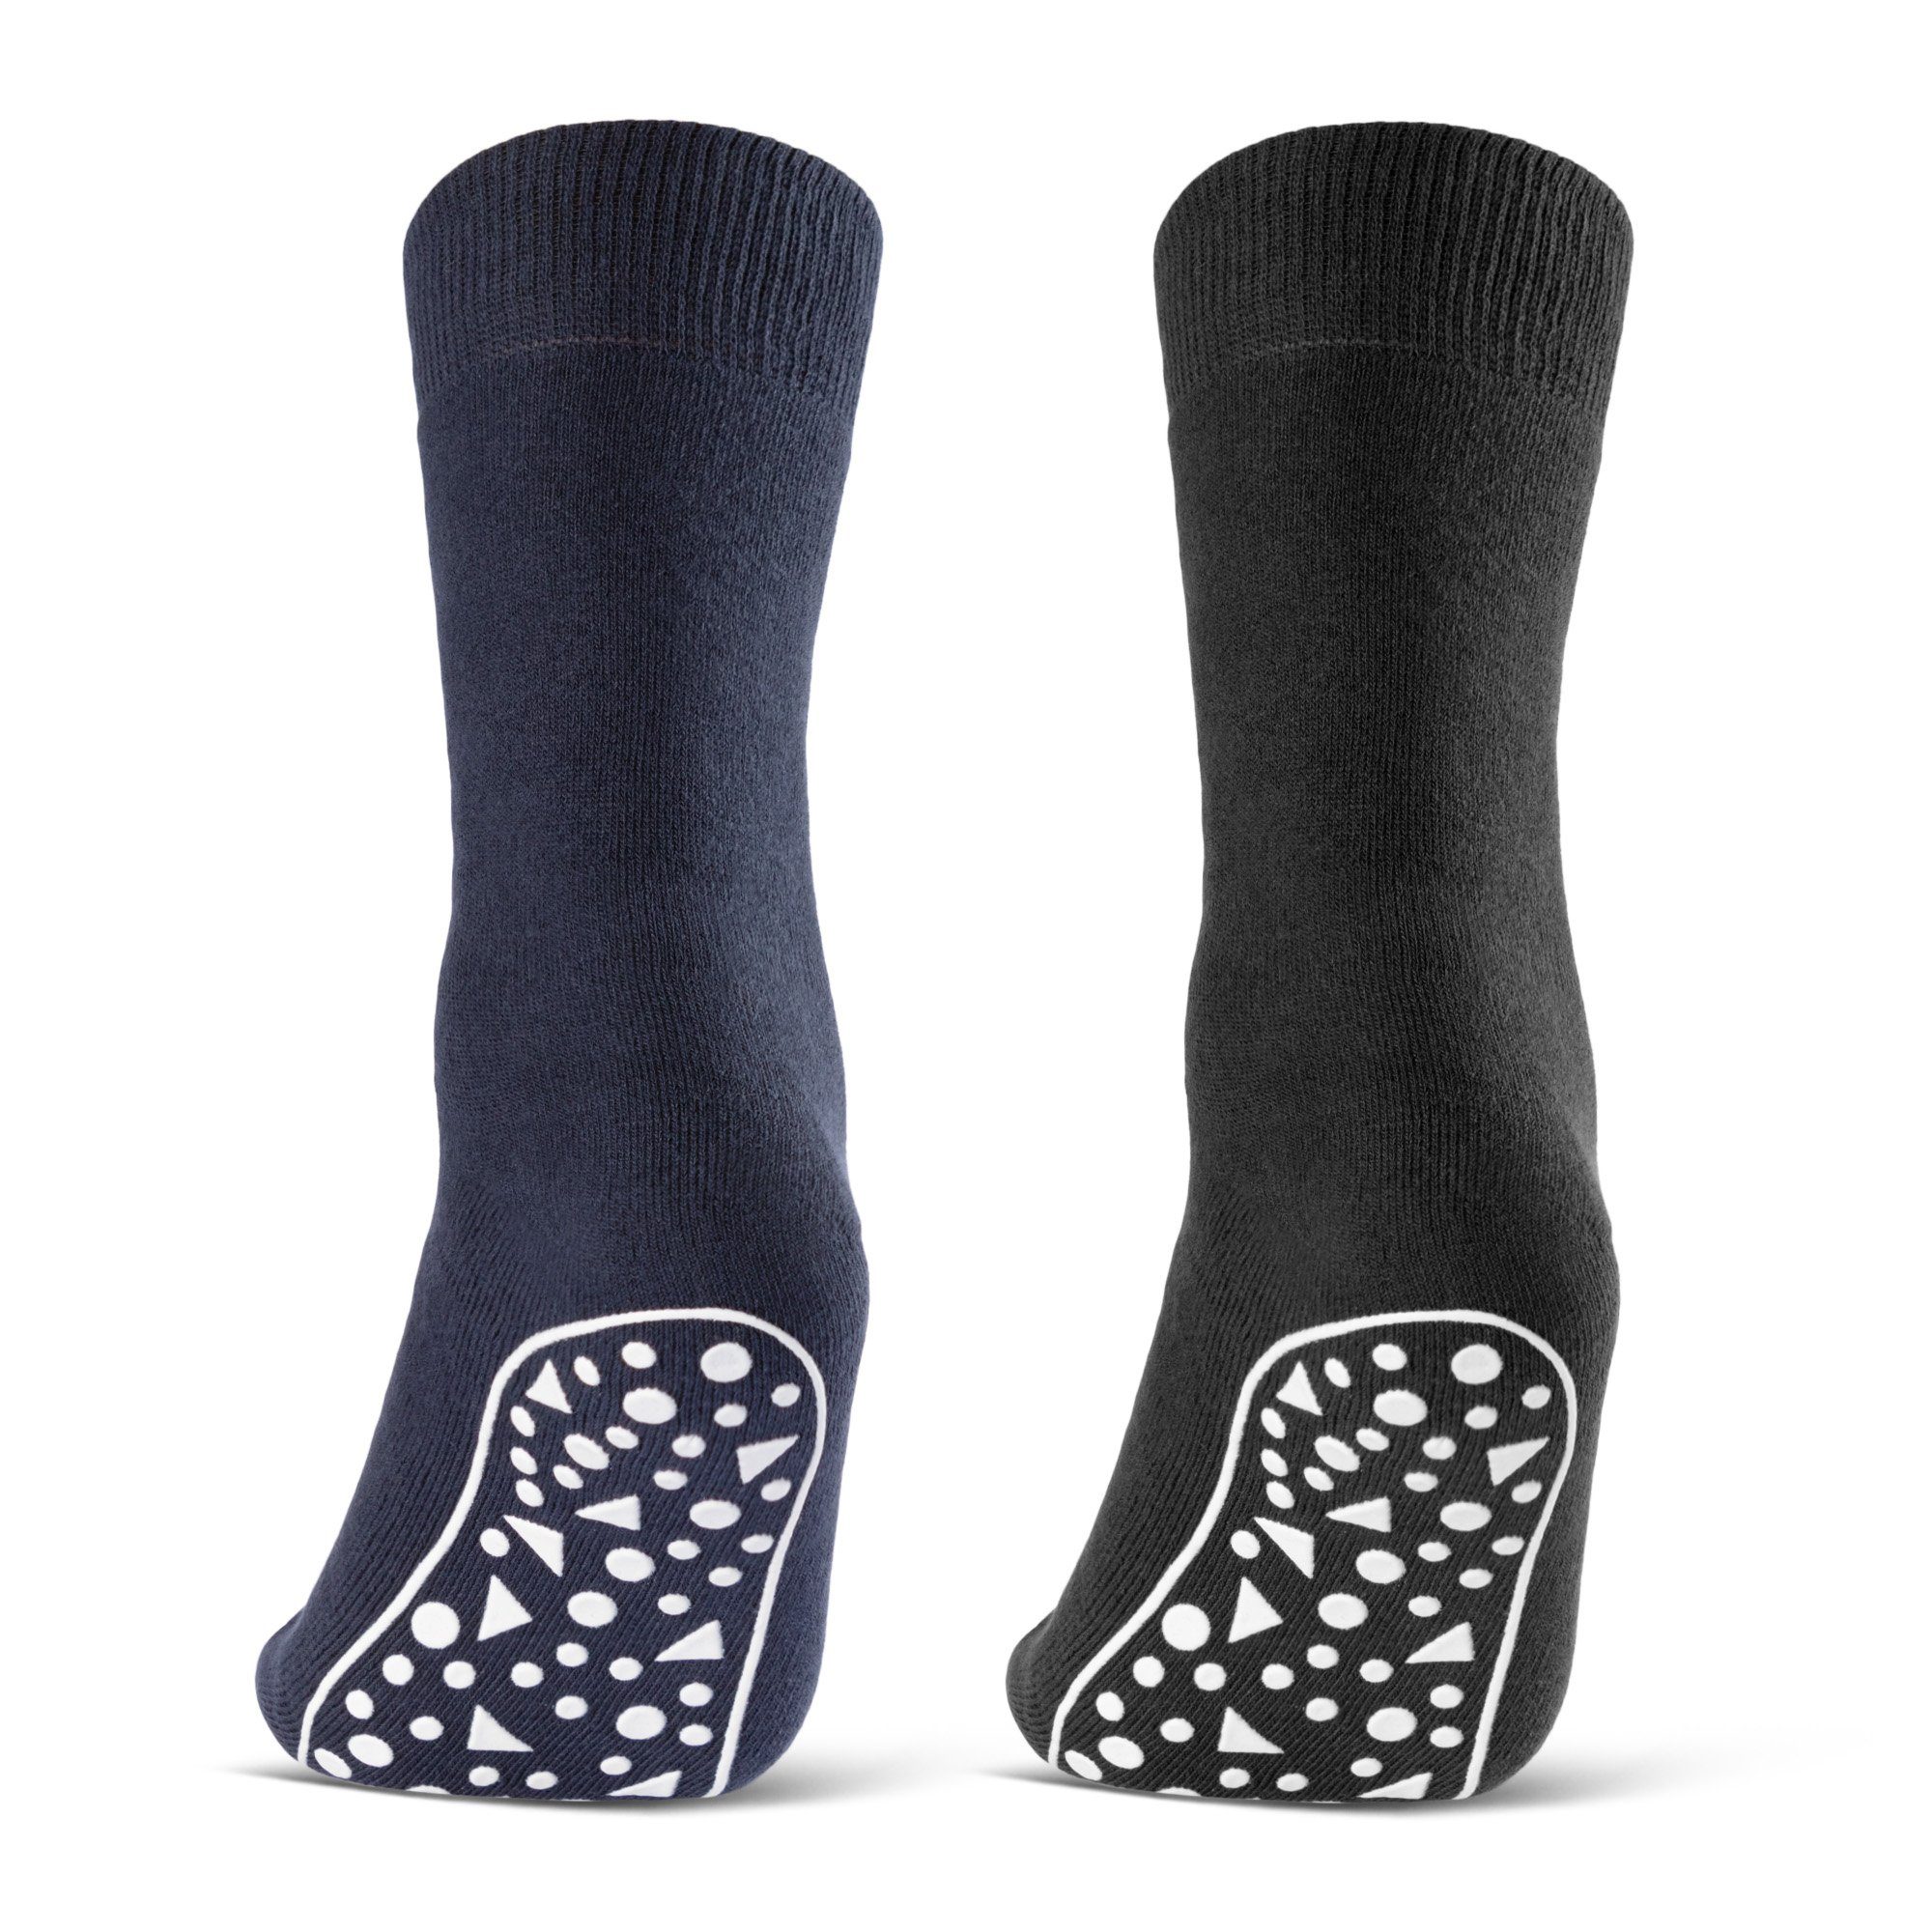 sockenkauf24 ABS-Socken 2, 4, 6 Paar Damen & Herren Anti Rutsch Socken  Baumwolle (Schwarz, Blau, Grau, 2-Paar, 47-50) Stoppersocken Noppensocken -  21395